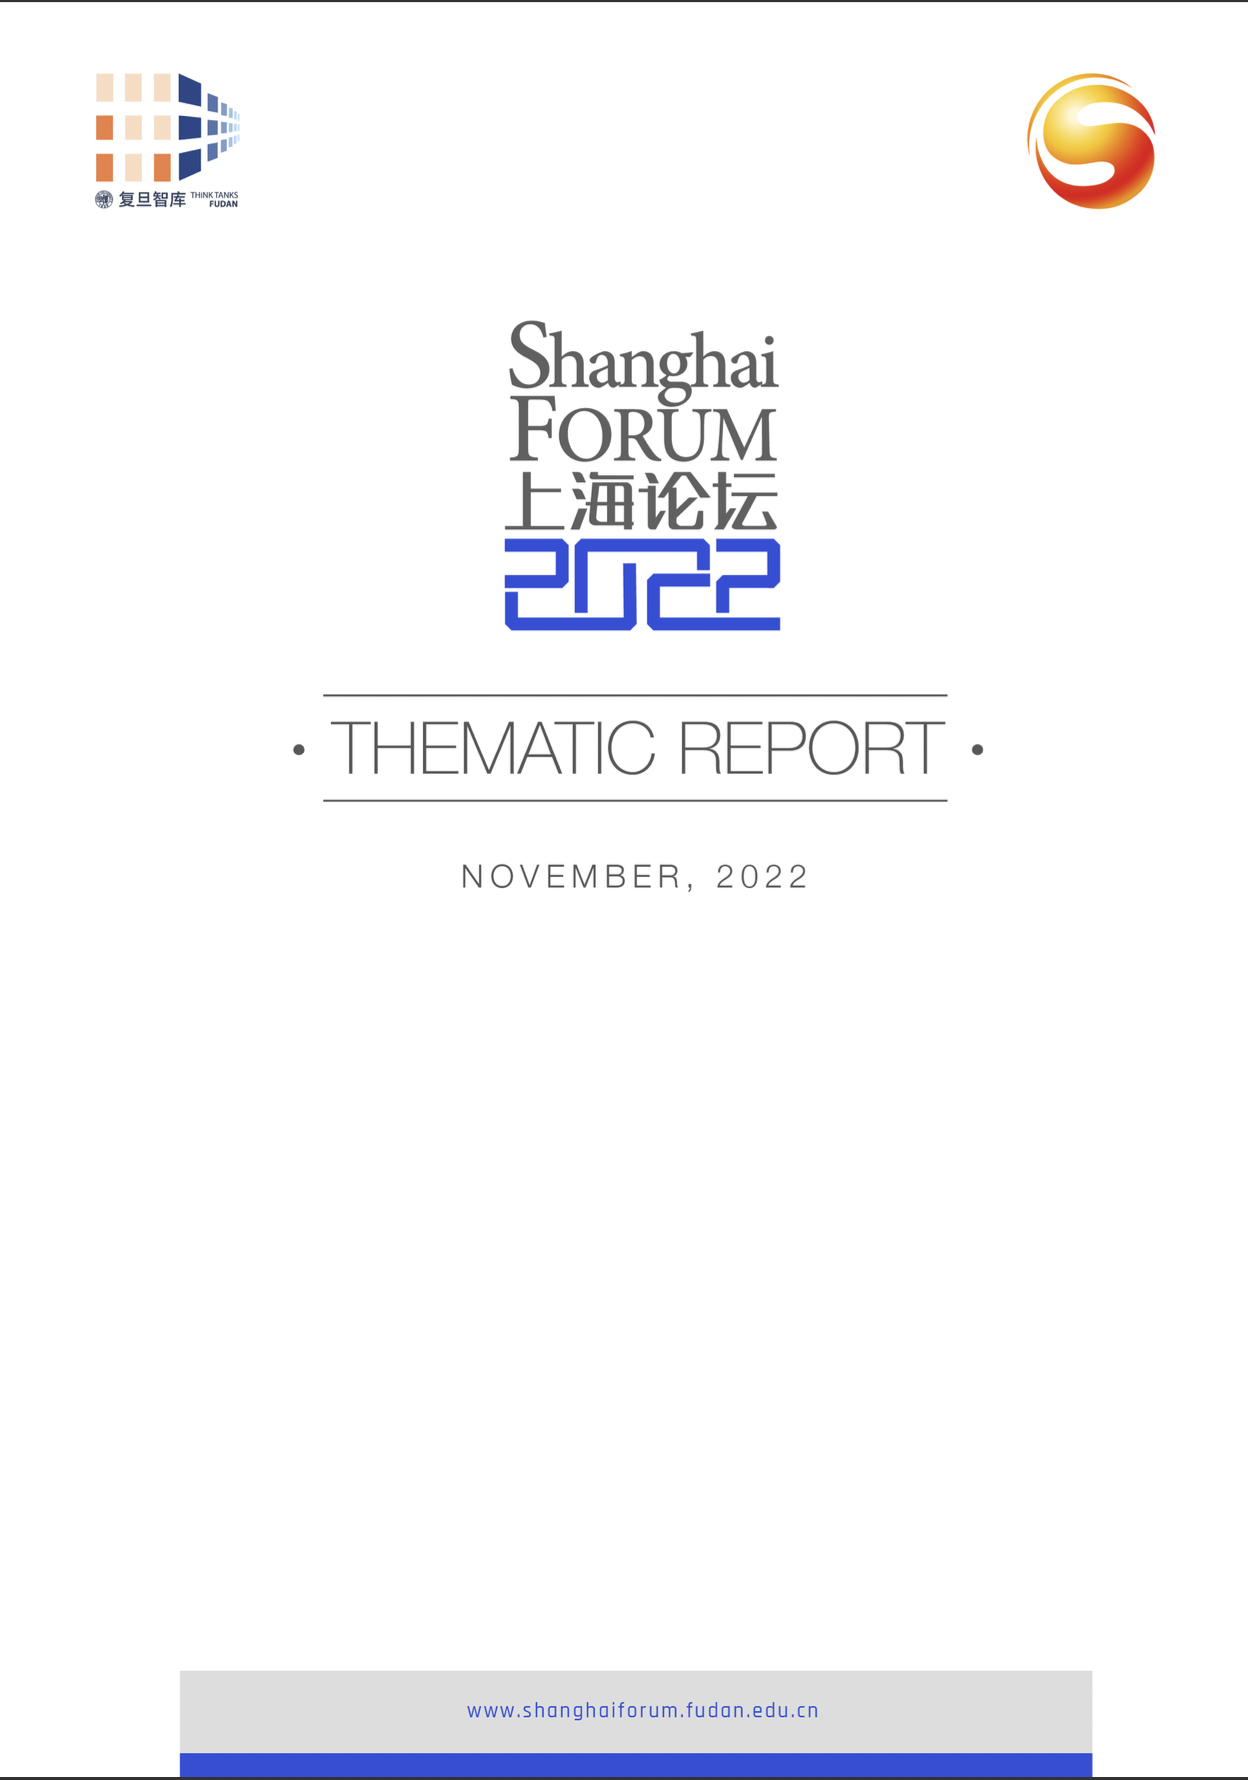 Shanghai Forum 2022 Thematic Report